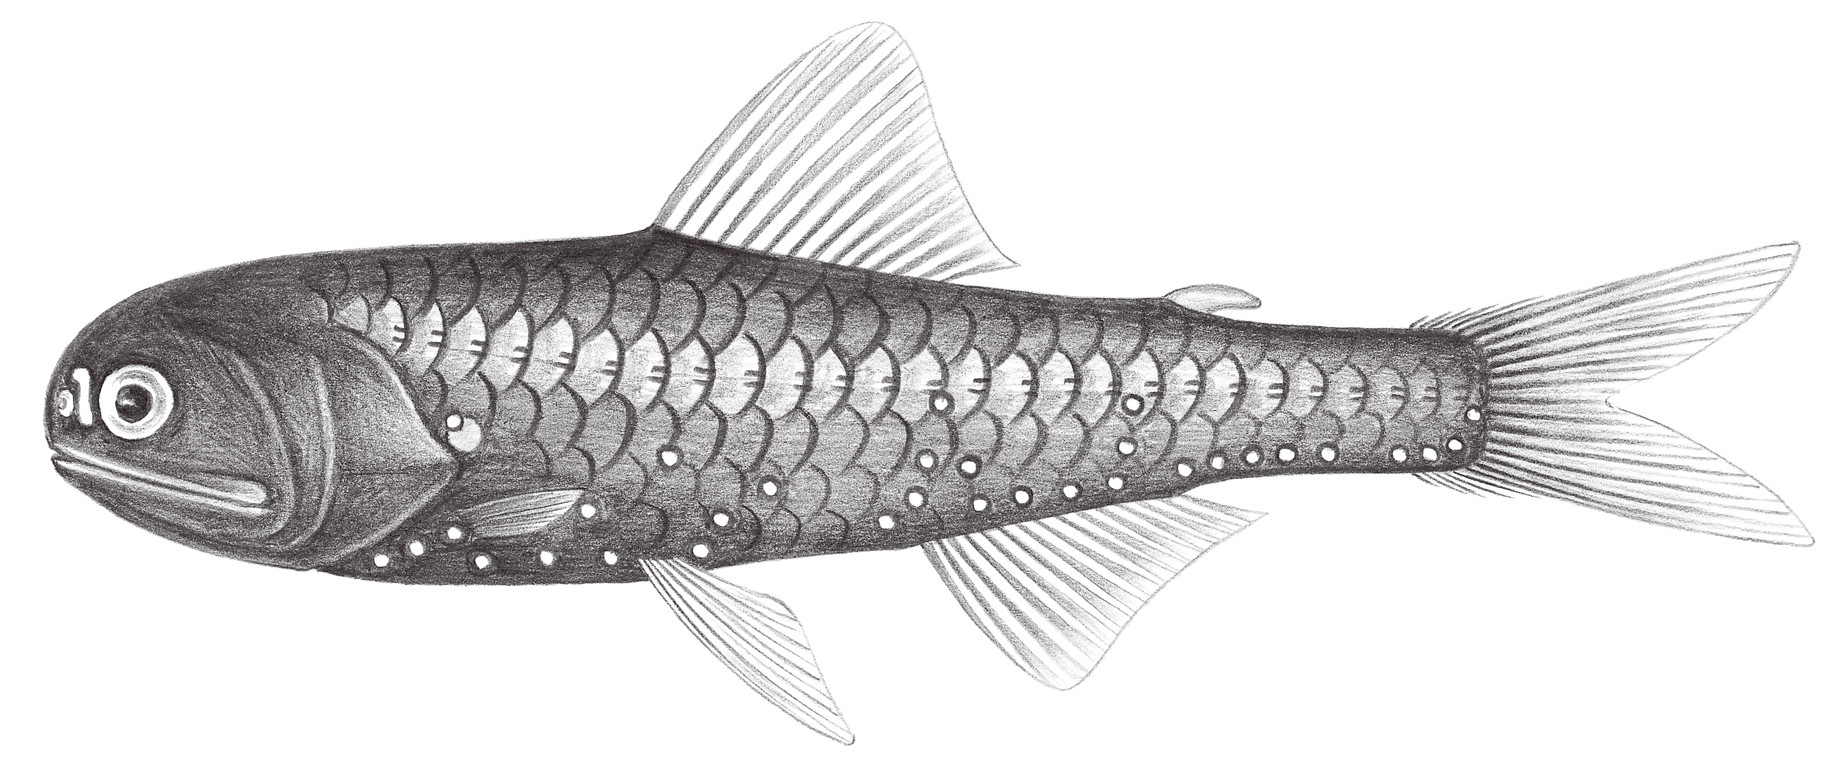 511.	史氏眶燈魚 Diaphus schmidti Tåning, 1932